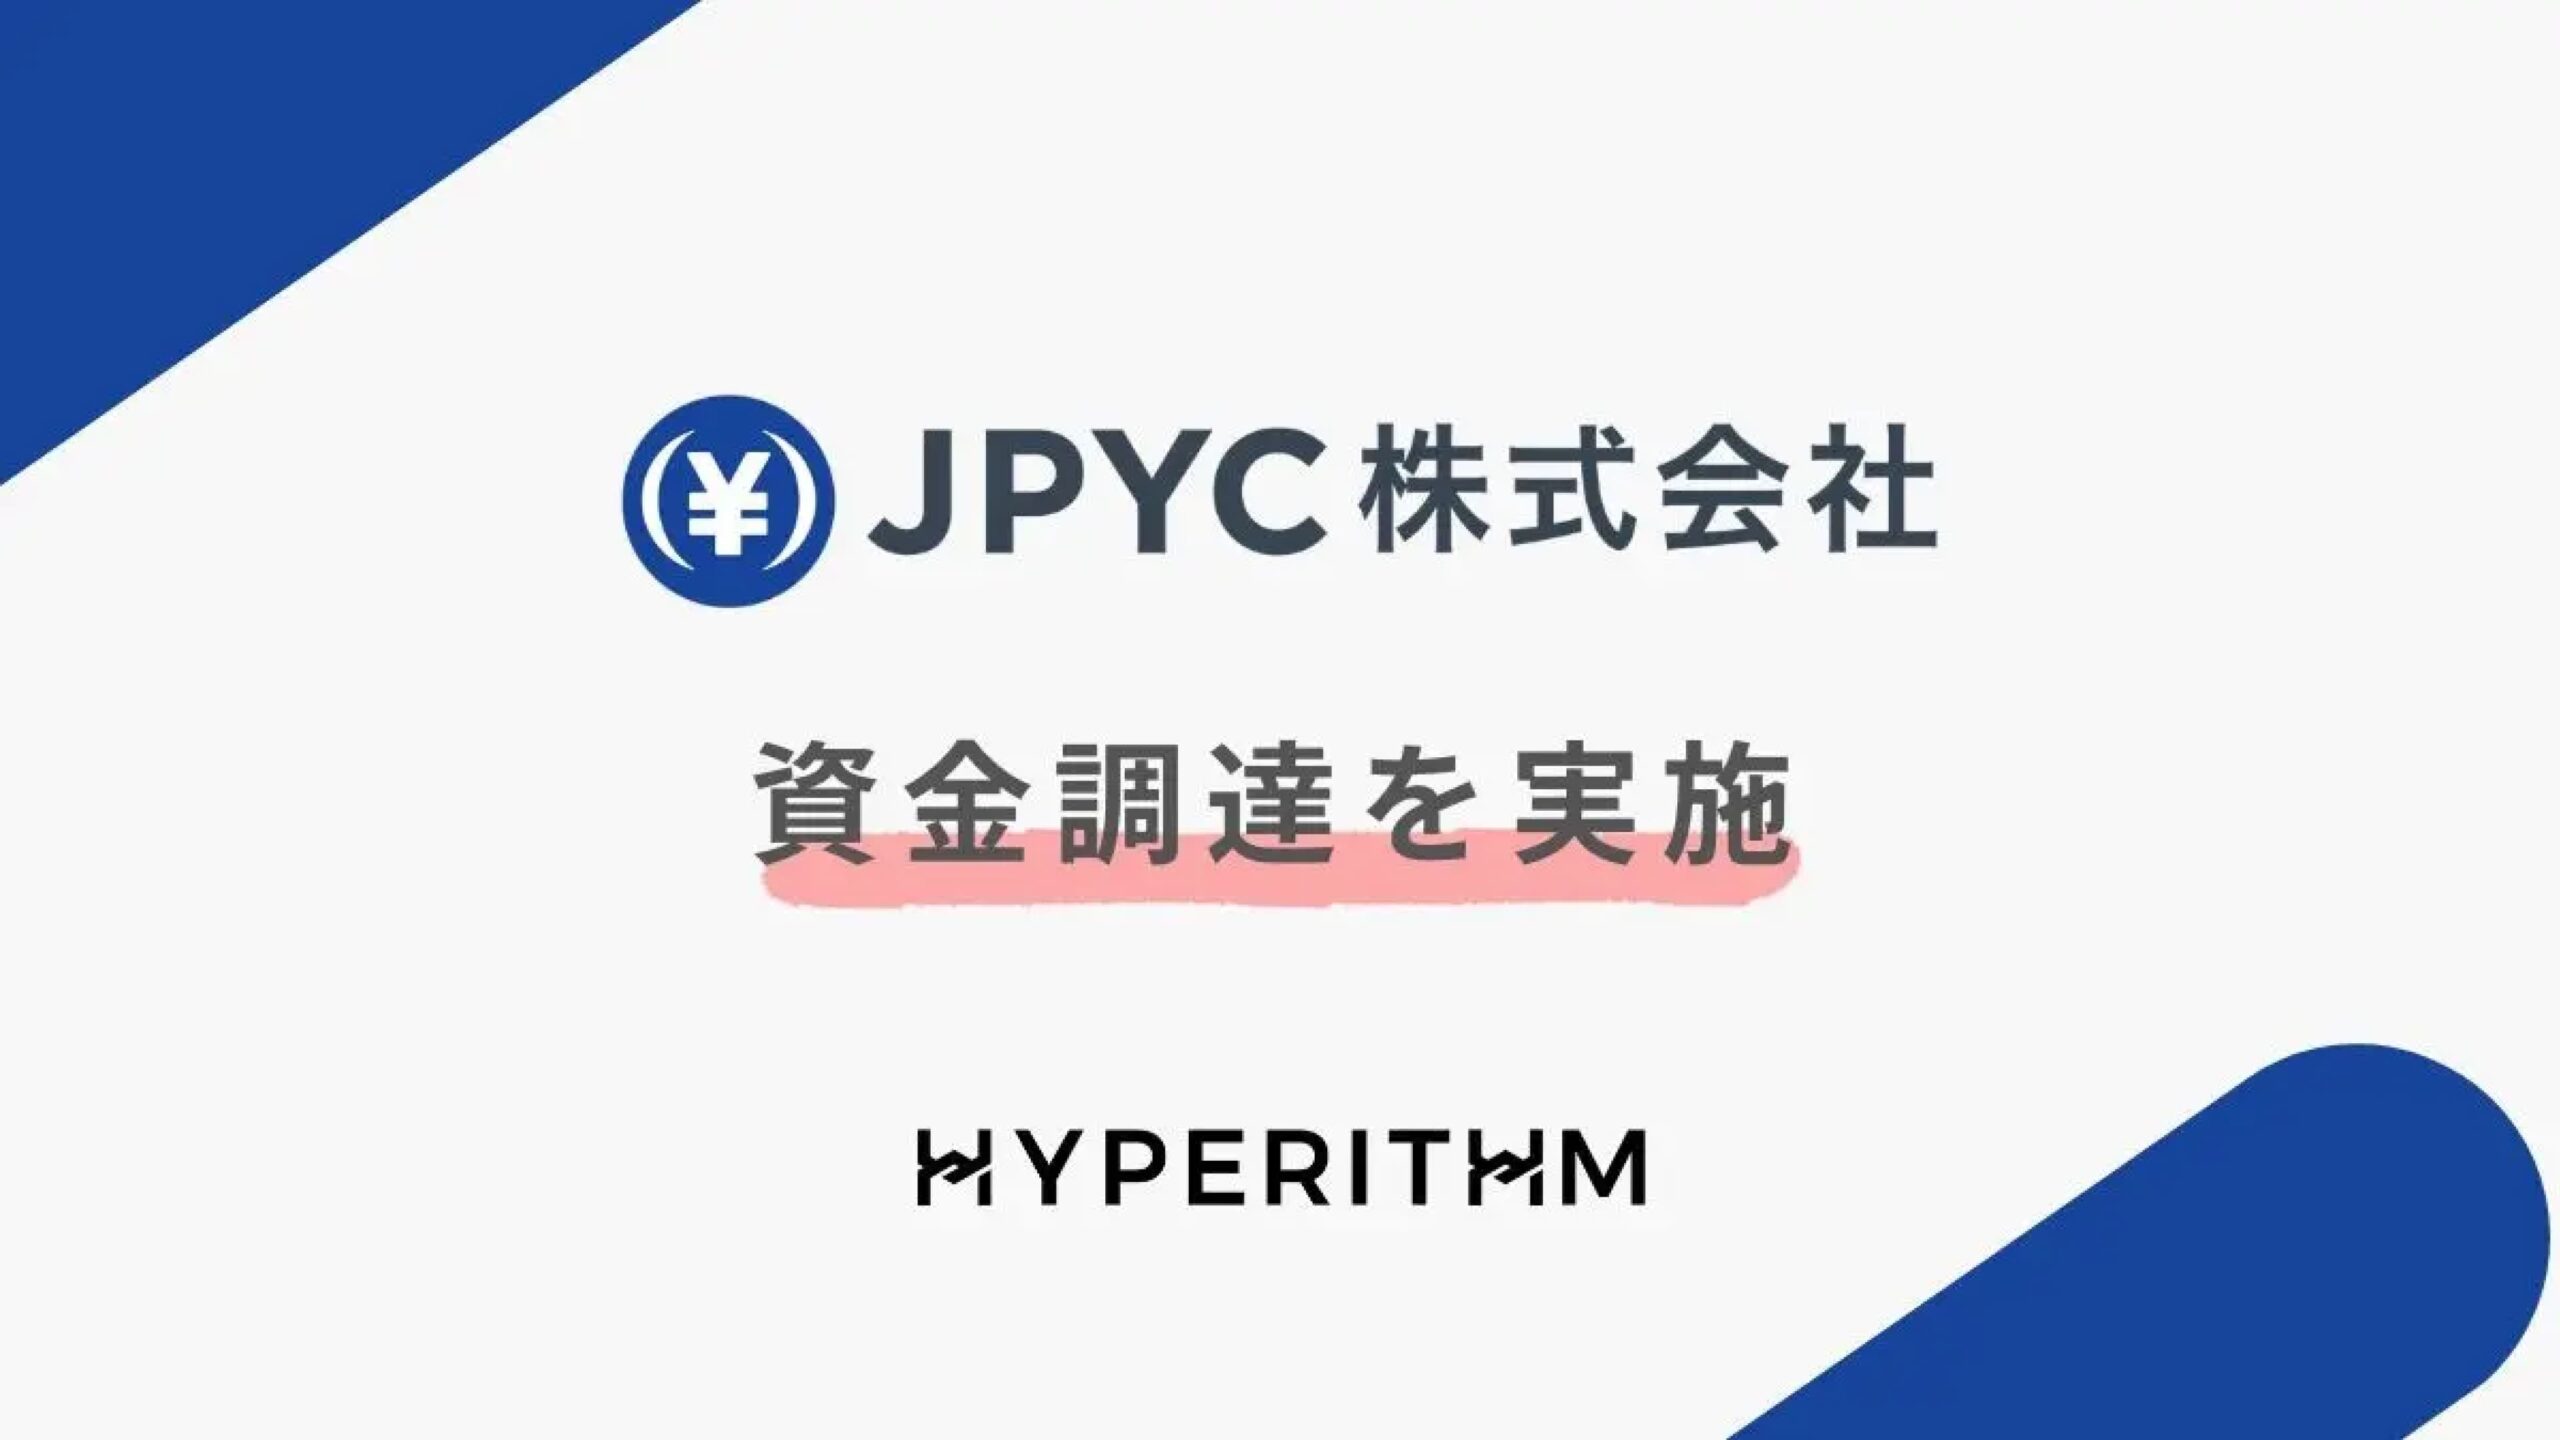 日本円ステーブルコインのJPYC株式会社、株式会社HYPERITHMより6,000万円の資金調達ー累計調達額は9億円に